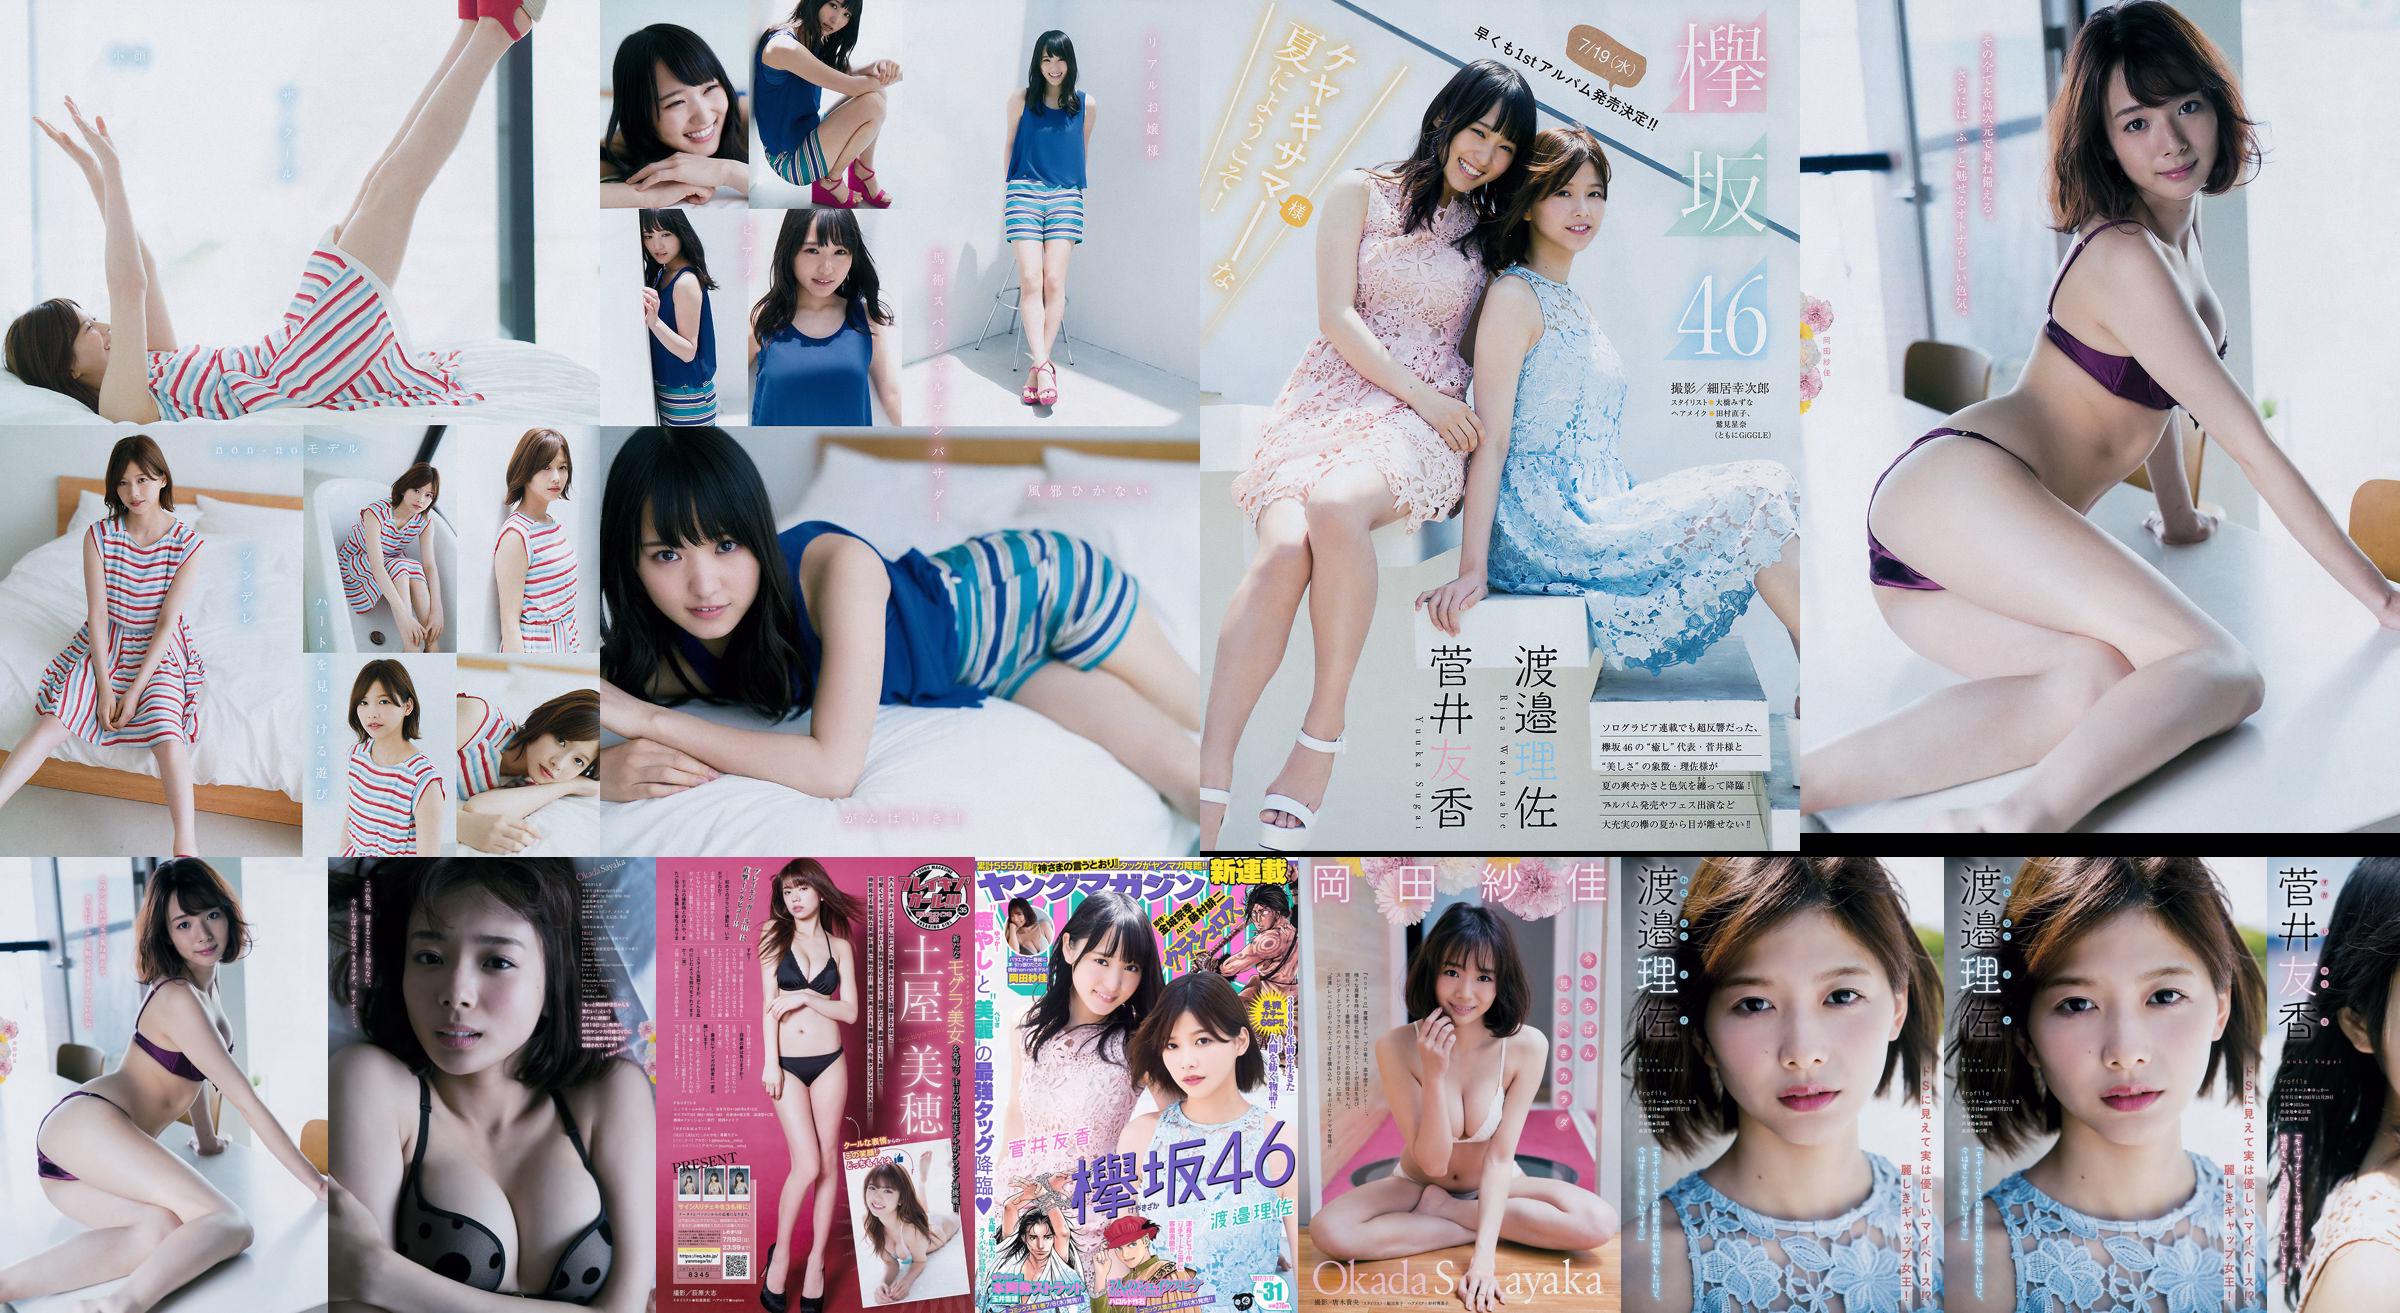 [Junges Magazin] Watanabe Risa, Sugai Yuka, Okada Saika 2017 Nr. 31 Fotomagazin No.a19c57 Seite 1